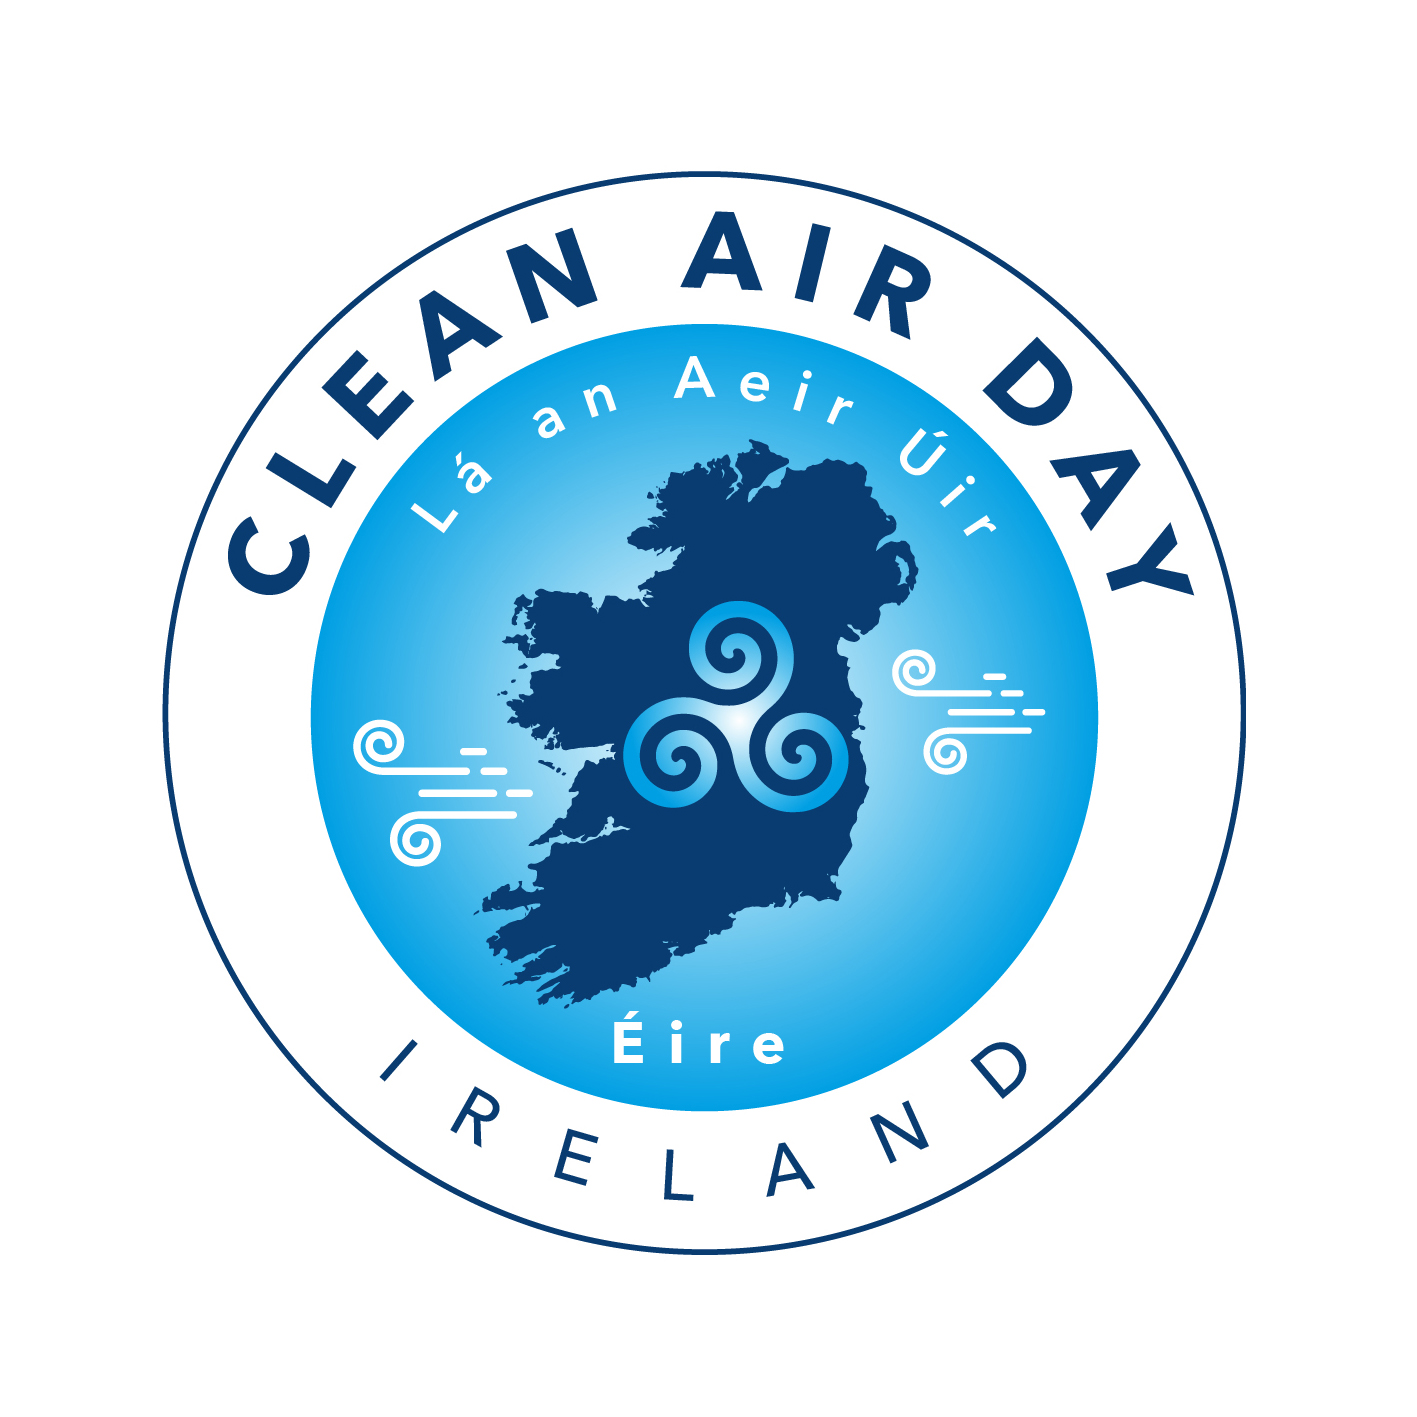 Ireland clean air day logo